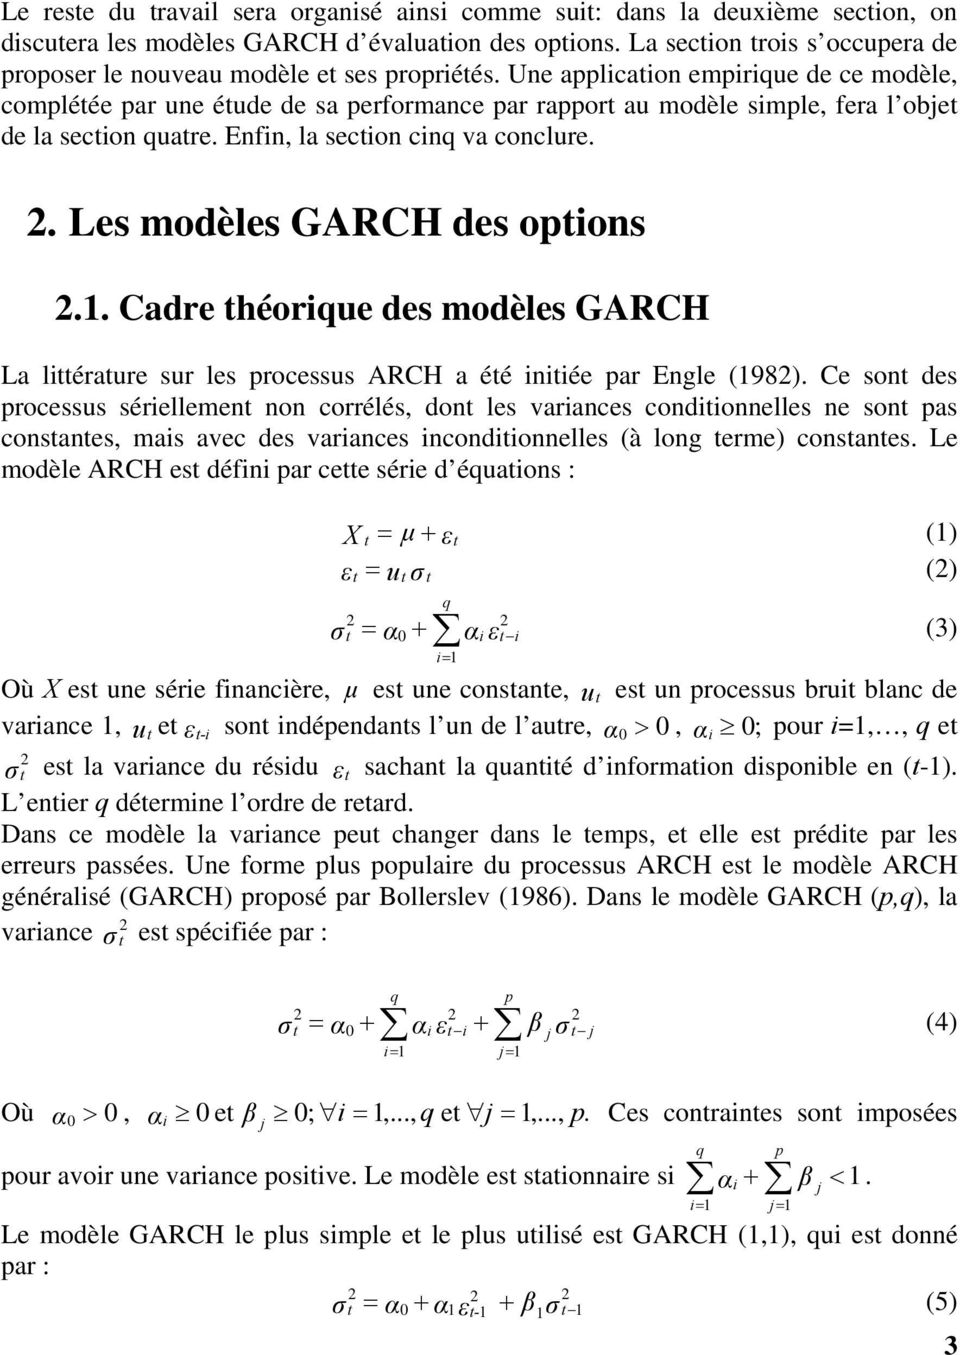 . Les modèles GARCH des opions.. Cadre héorique des modèles GARCH La liéraure sur les processus ARCH a éé iniiée par Engle (98).